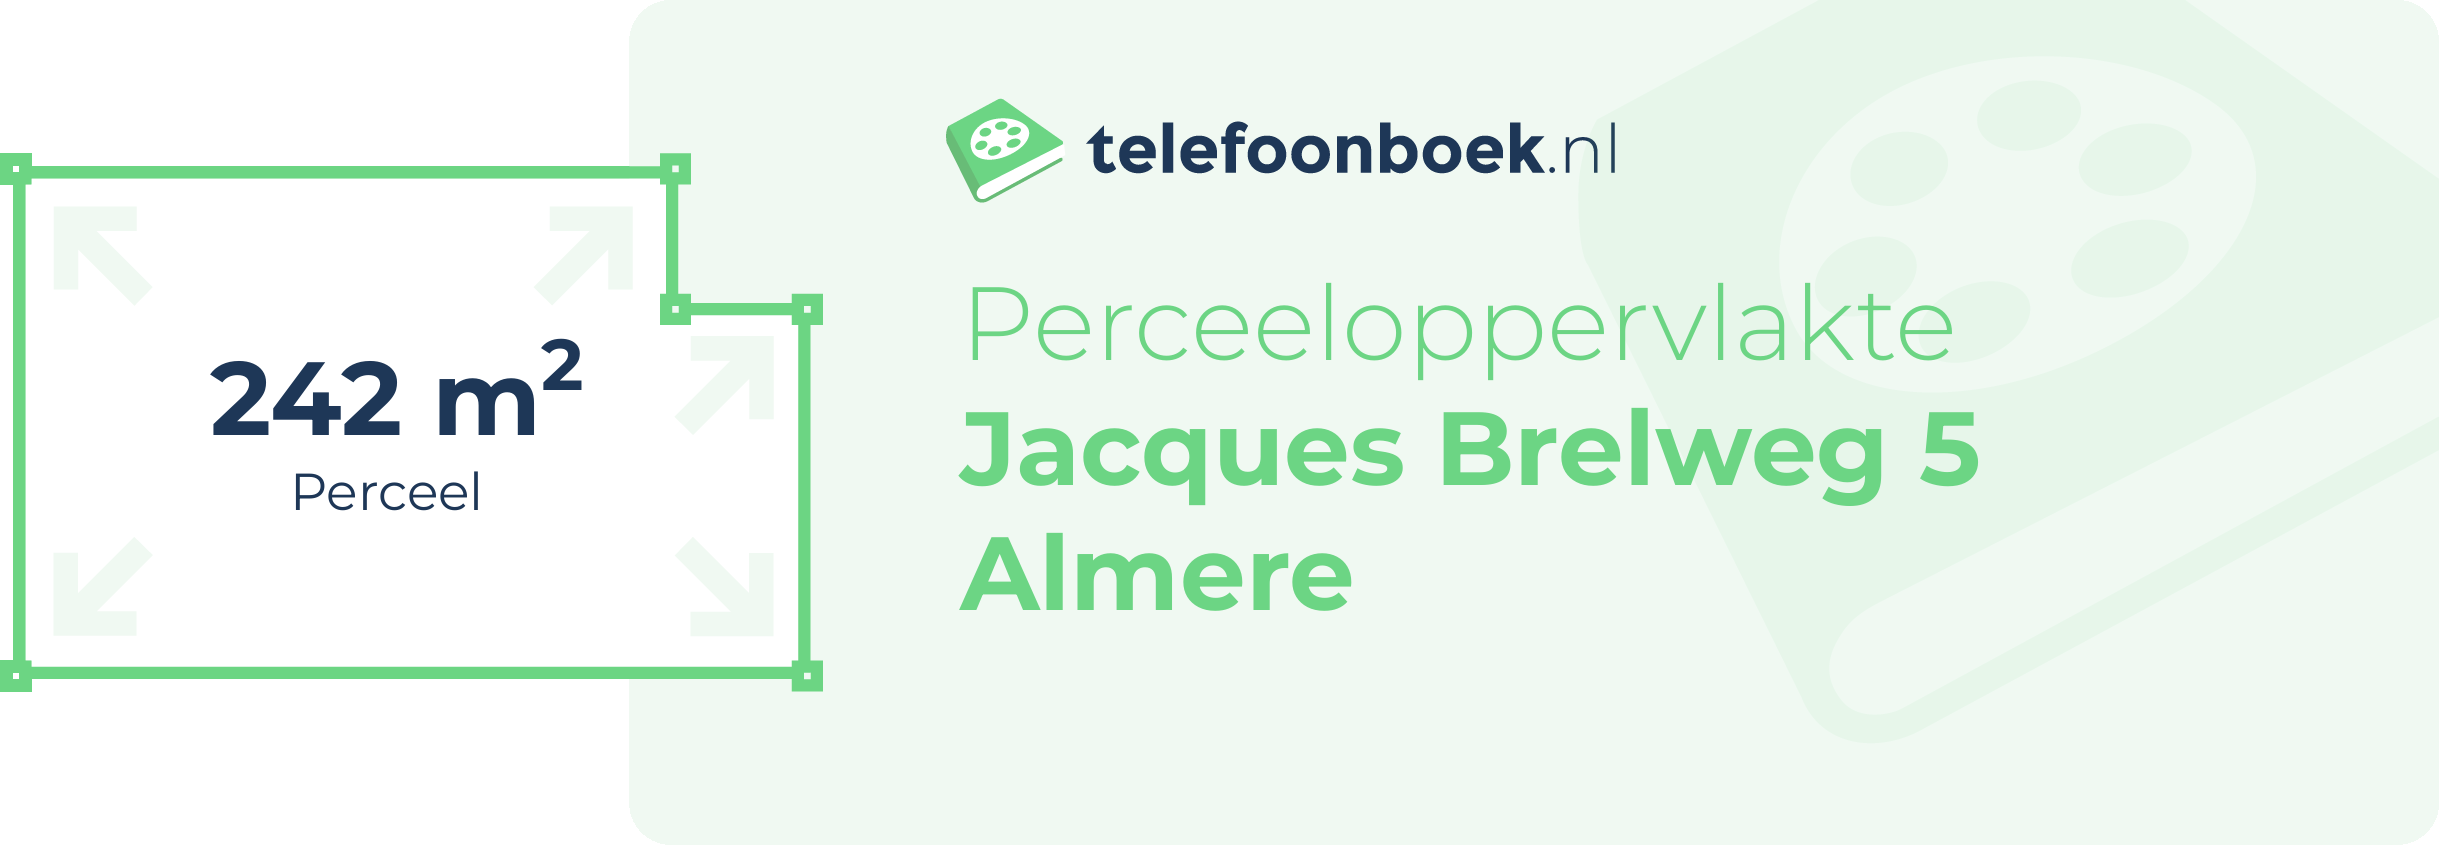 Perceeloppervlakte Jacques Brelweg 5 Almere